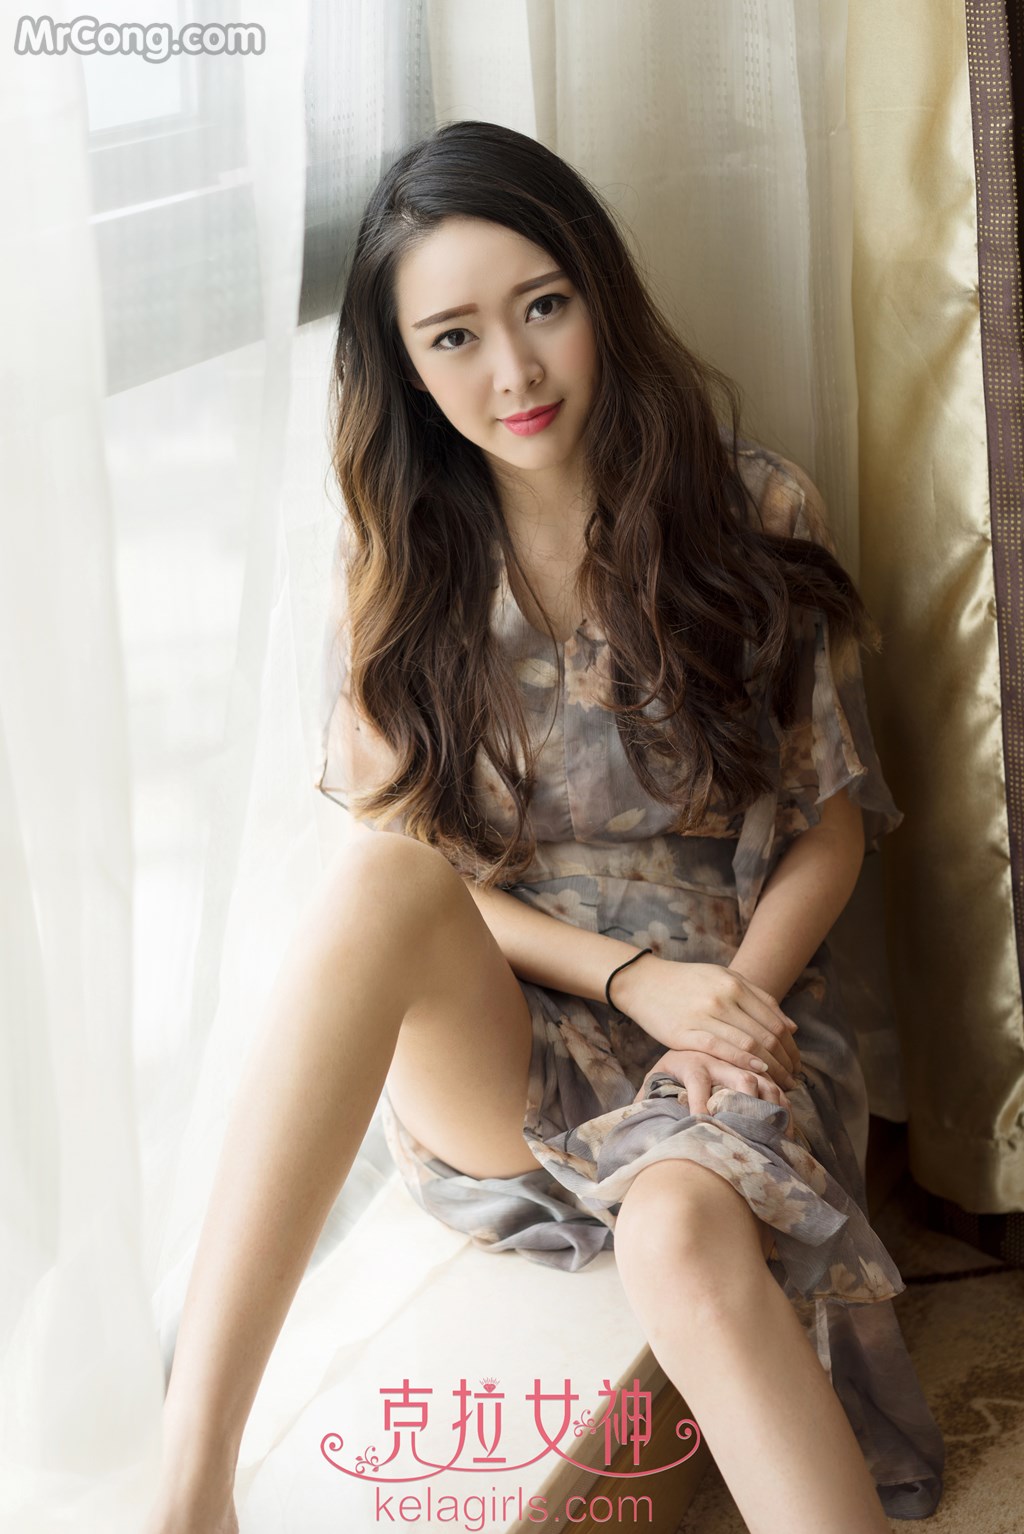 KelaGirls 2017-04-05: Model Shan Shan (珊珊) (31 photos) photo 1-8